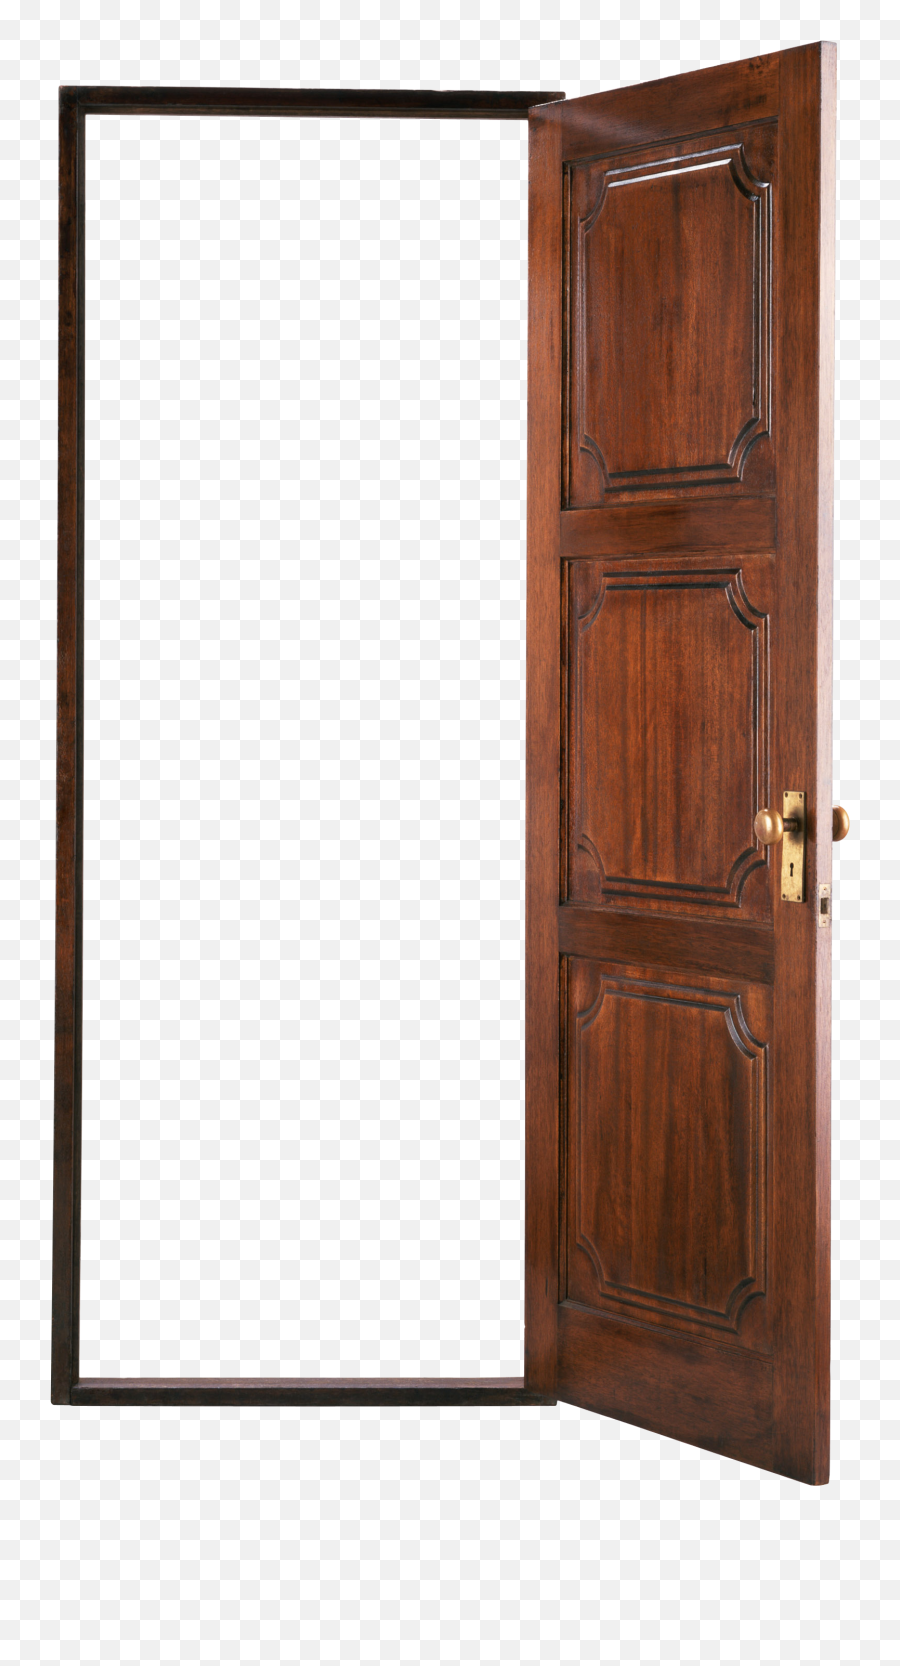 Door Png Images Wood Open - Clip Art Transparent Door,Doorway Png